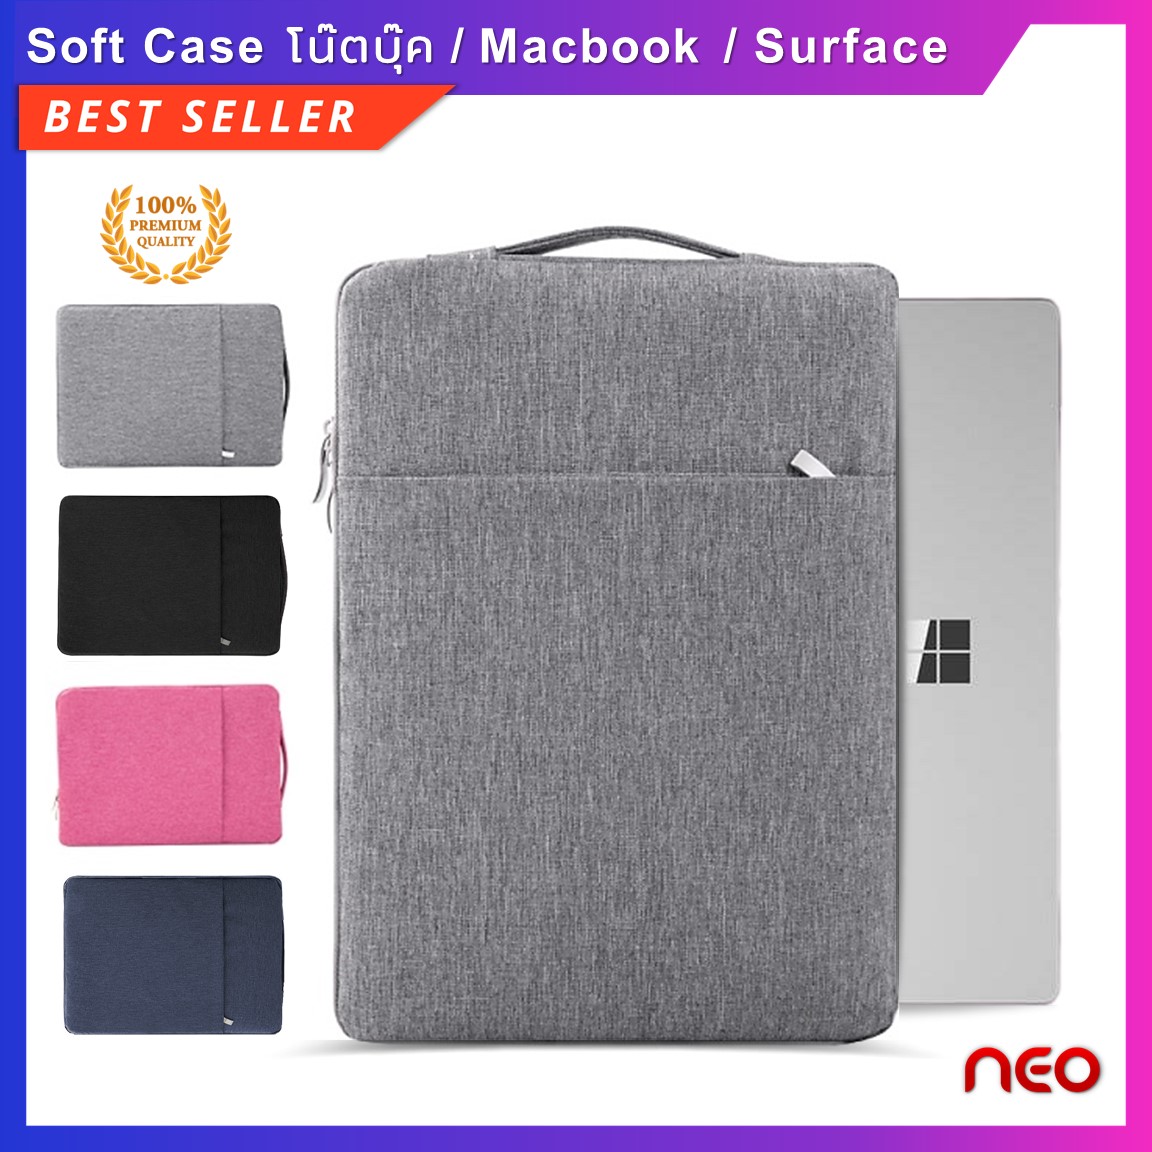 NEO กระเป๋าโน๊ตบุ๊ค soft case เคสแล็ปท็อป เคสโน๊ตบุ๊ค Surface เคสMacbook Air Pro 11.6 12.5 13.3  14 15.6 นิ้ว ซองใส่โน๊ตบุ๊คกันรอย กันน้ำ ซองแล็ปท็อป Case Laptop Bag